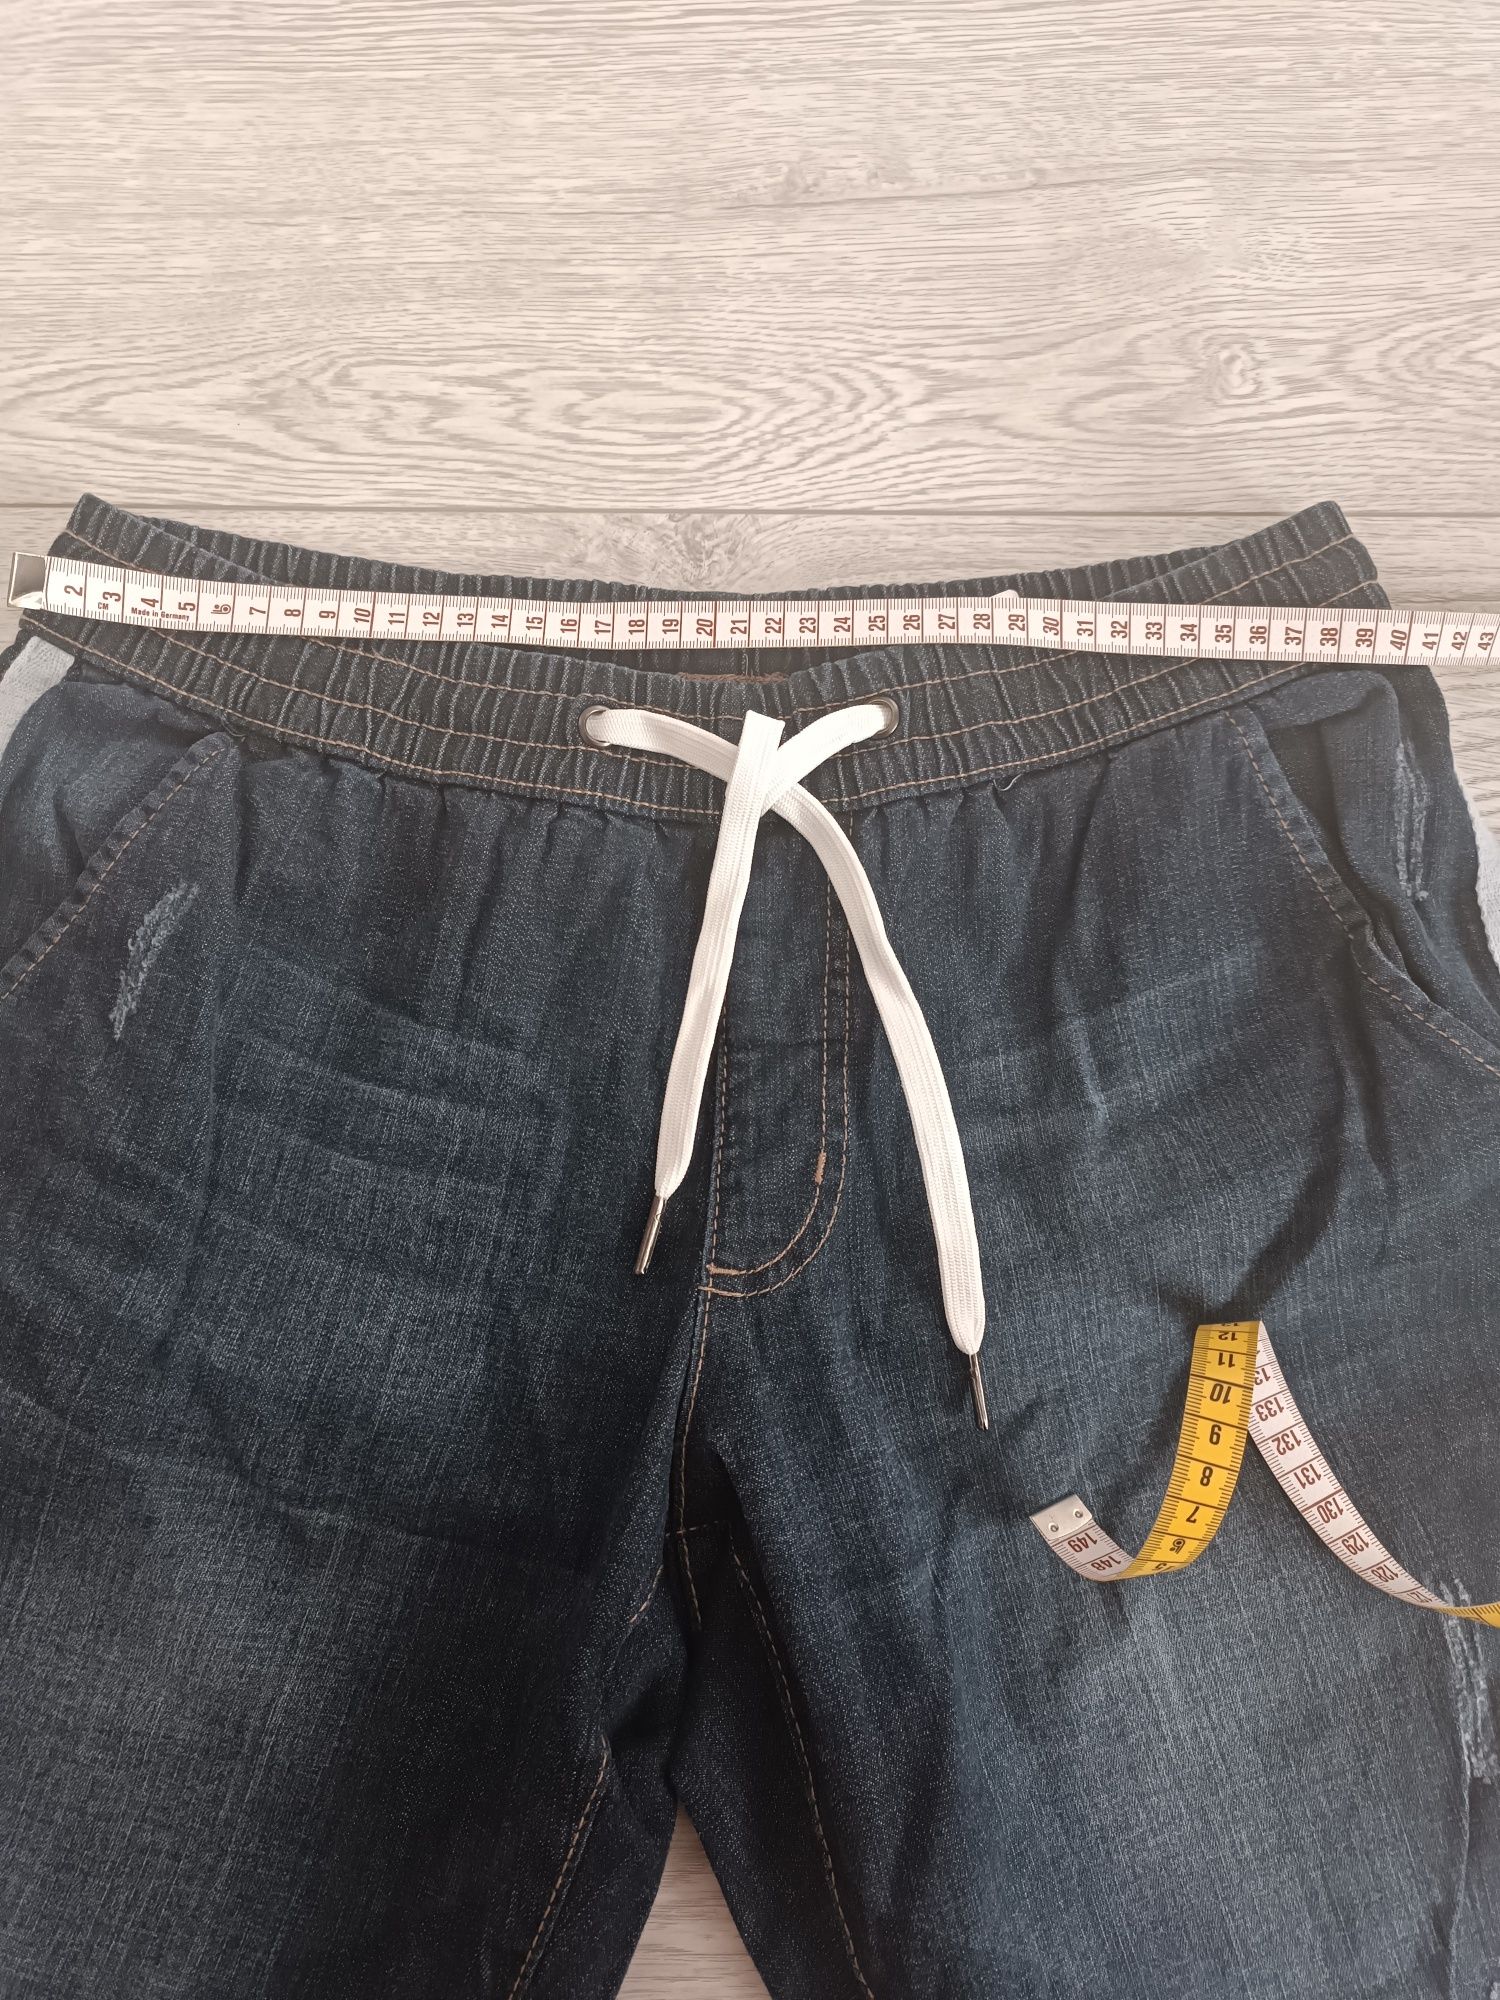 Spodnie damskie jeansy Nowe bez metki